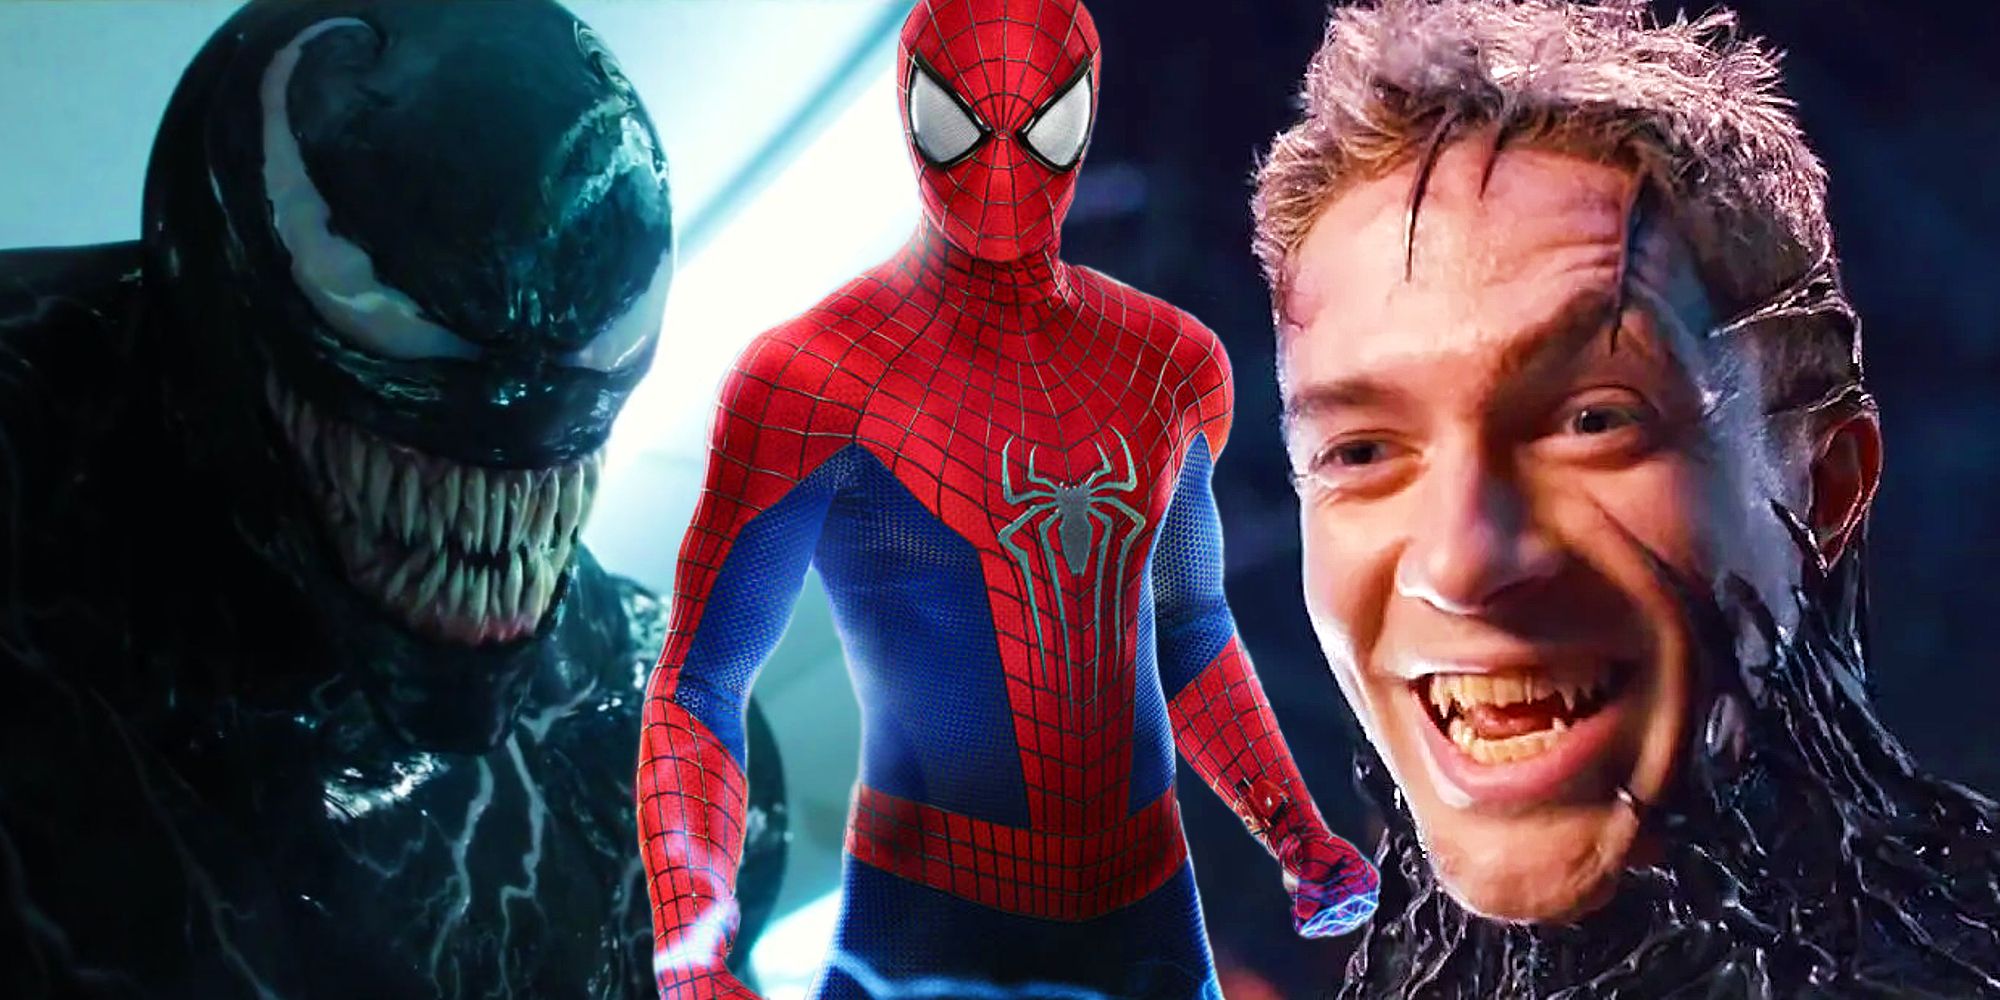 La película Venom de 2018 rompió una maldición que canceló 3 películas anteriores